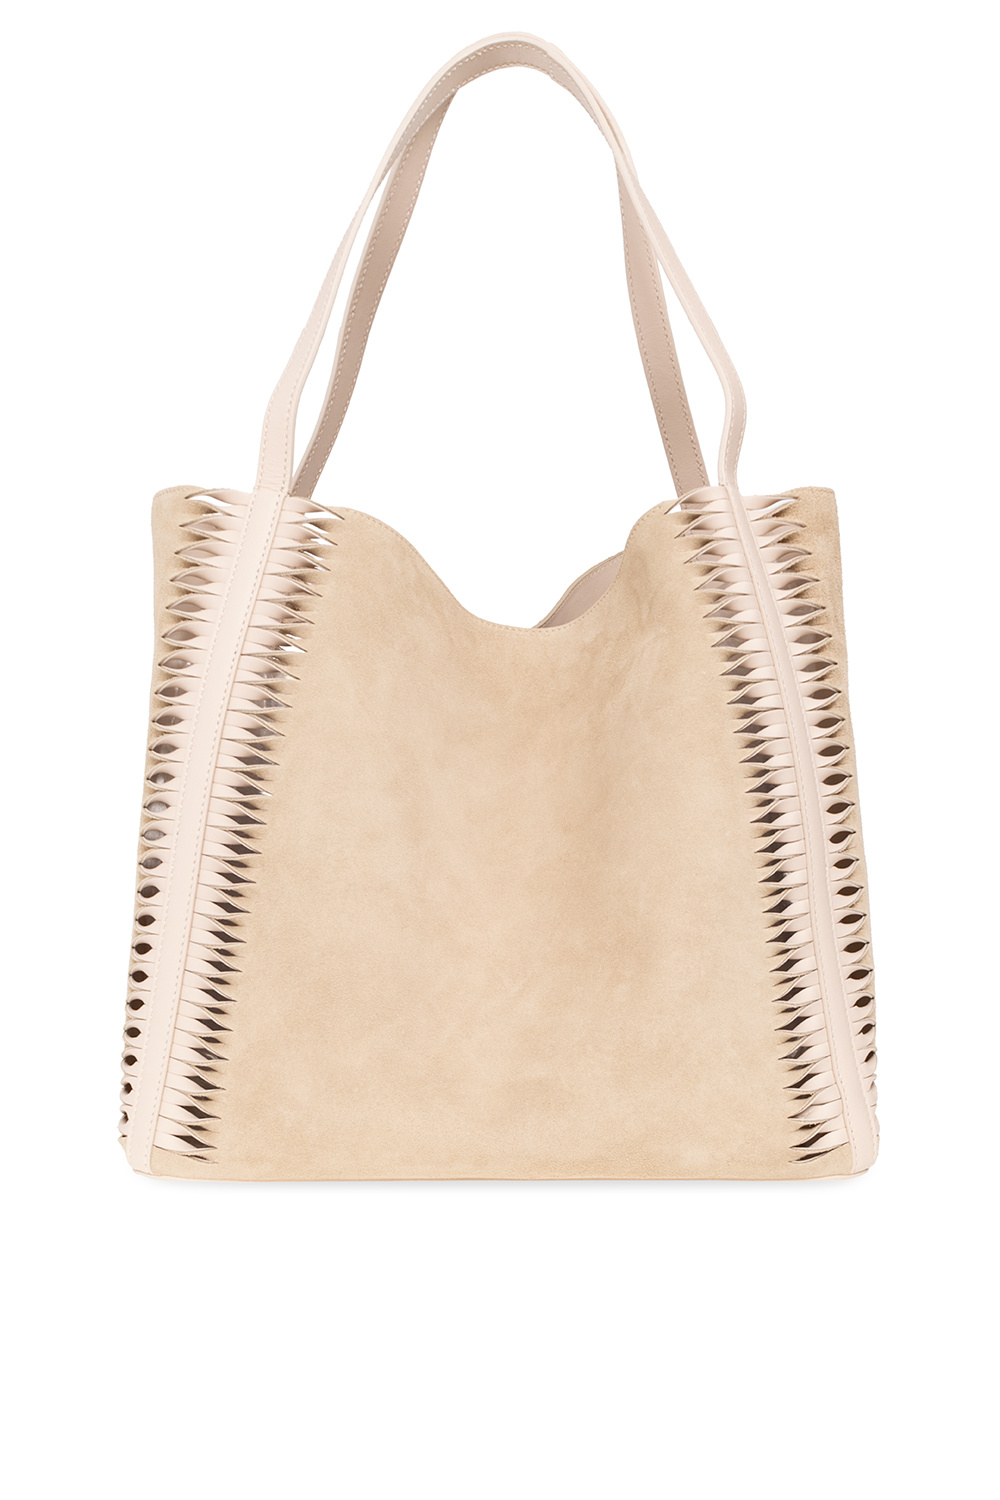 Chloé ‘Louela’ shopper bag